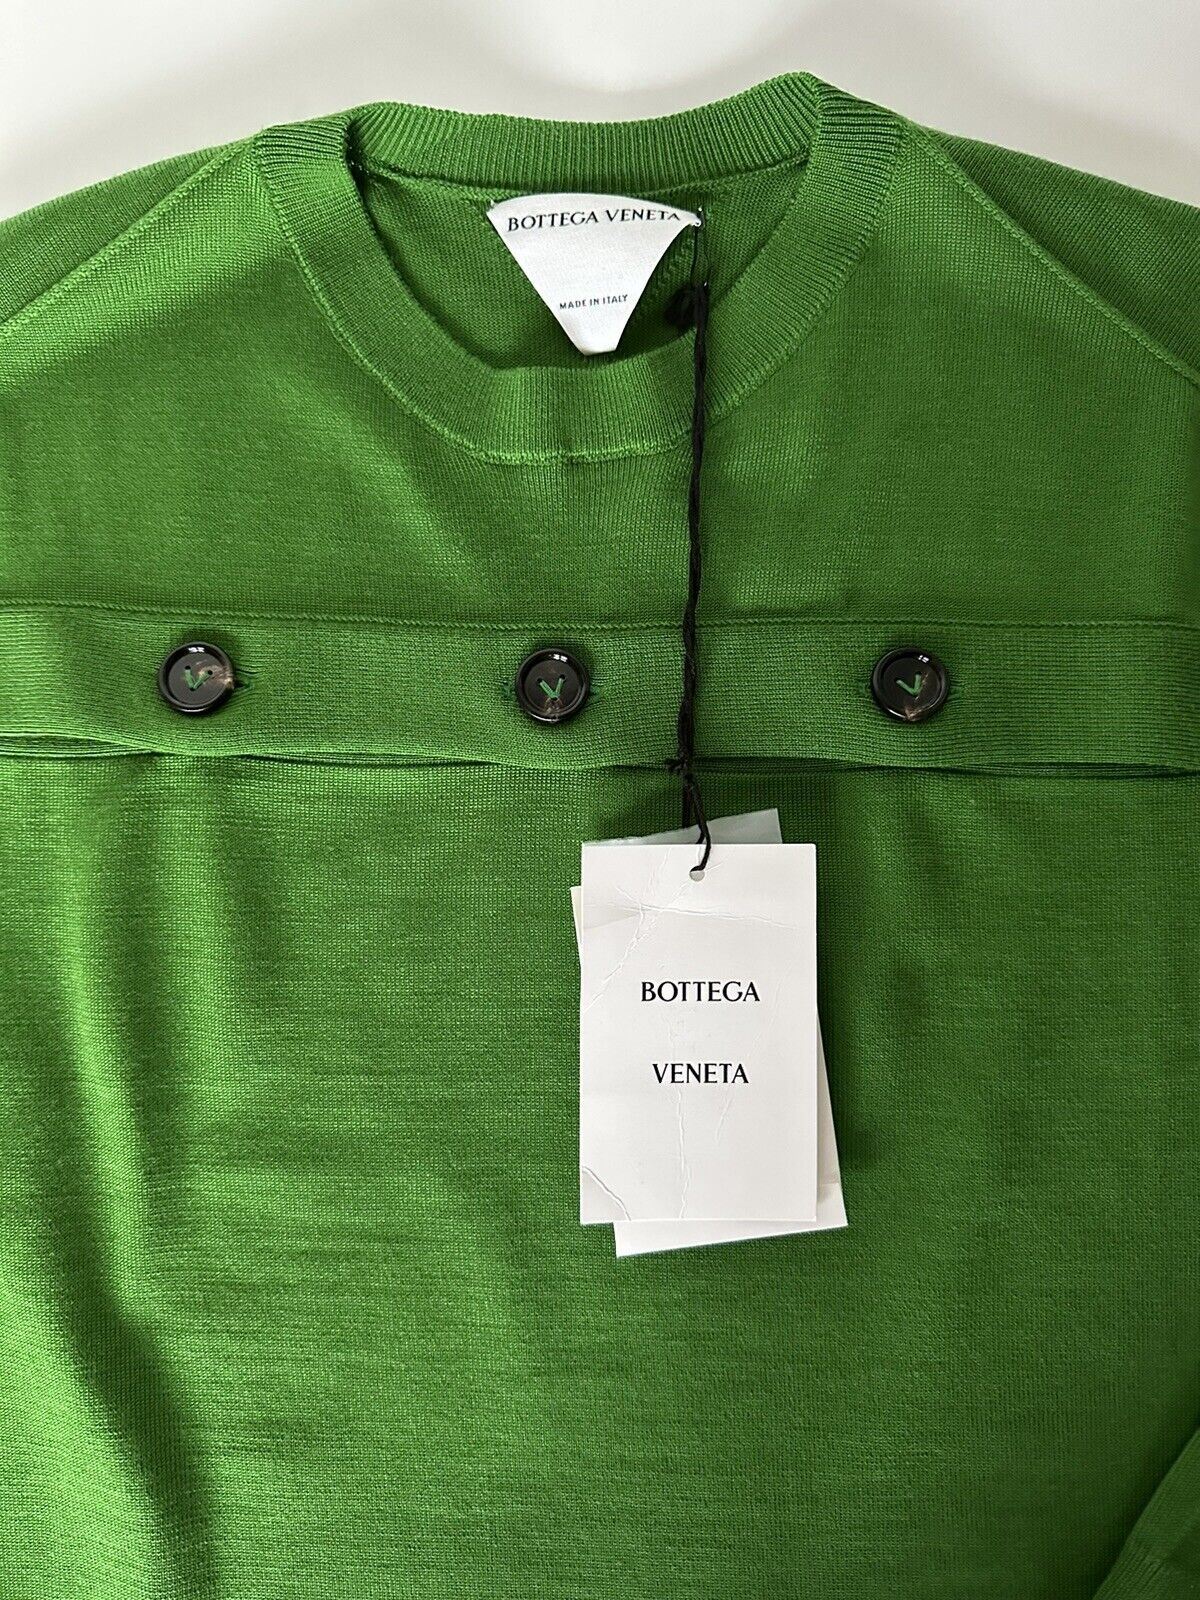 Neu mit Etikett: 1.750 $ Bottega Veneta Damen-Strickoberteil aus grüner Wolle mit offenen Knöpfen, Größe L, Größe 648729